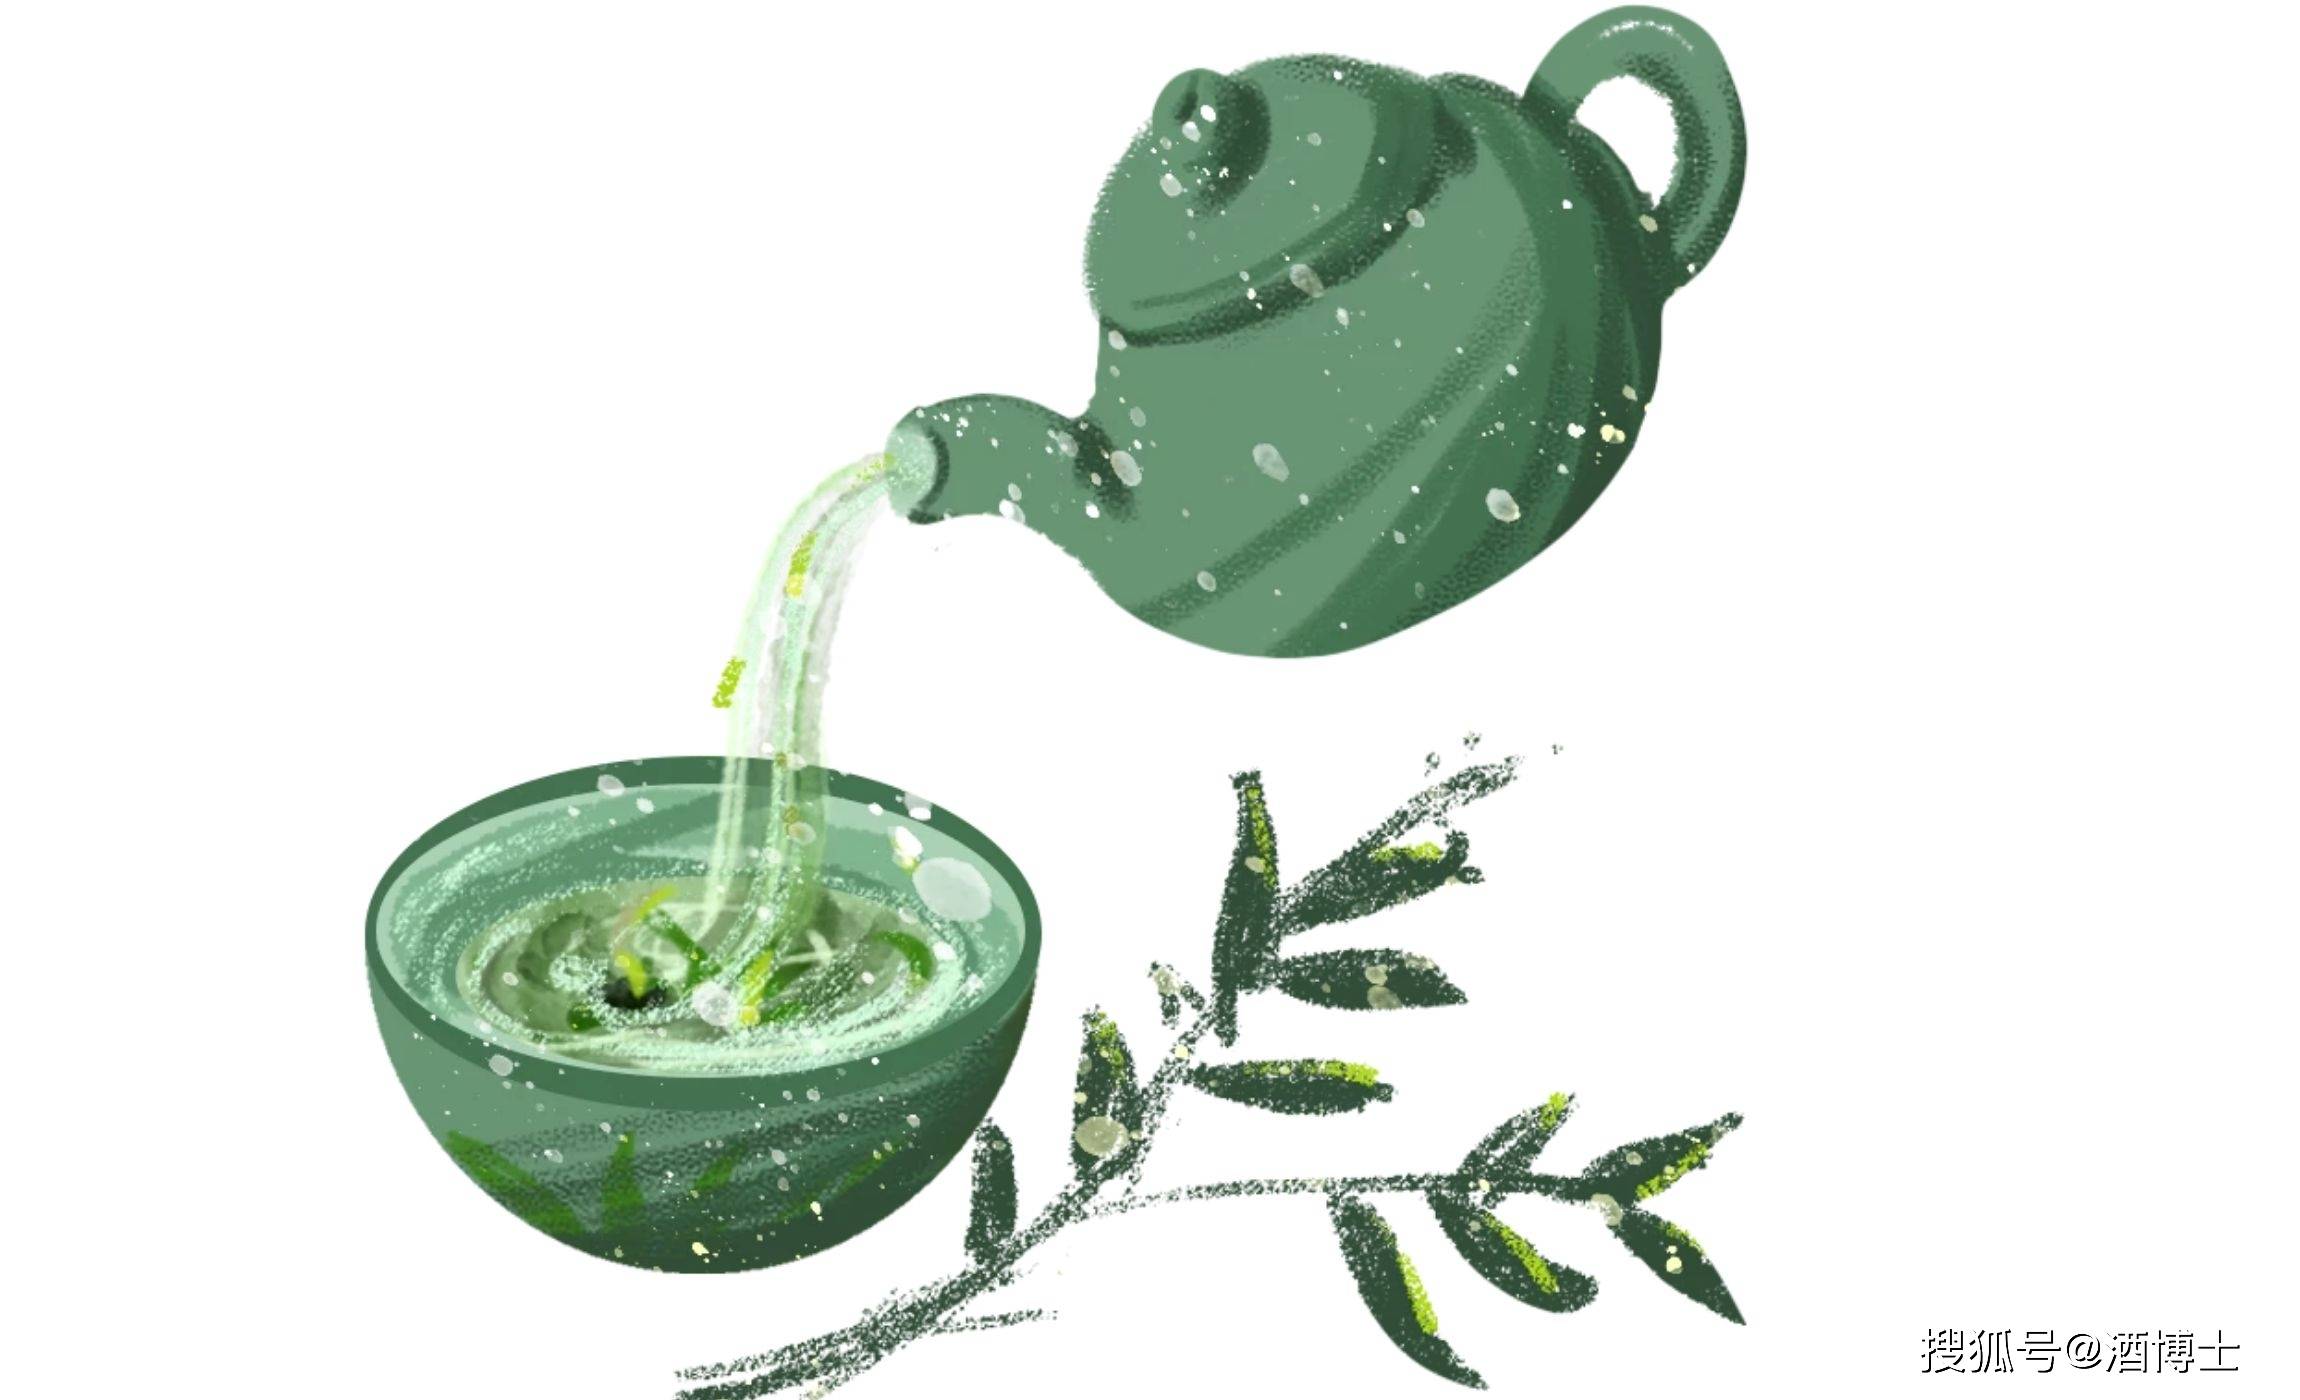 谷雨茶"春山谷雨前,并手摘芳烟"谷雨入深春,茶树在雨水的滋润下芽叶